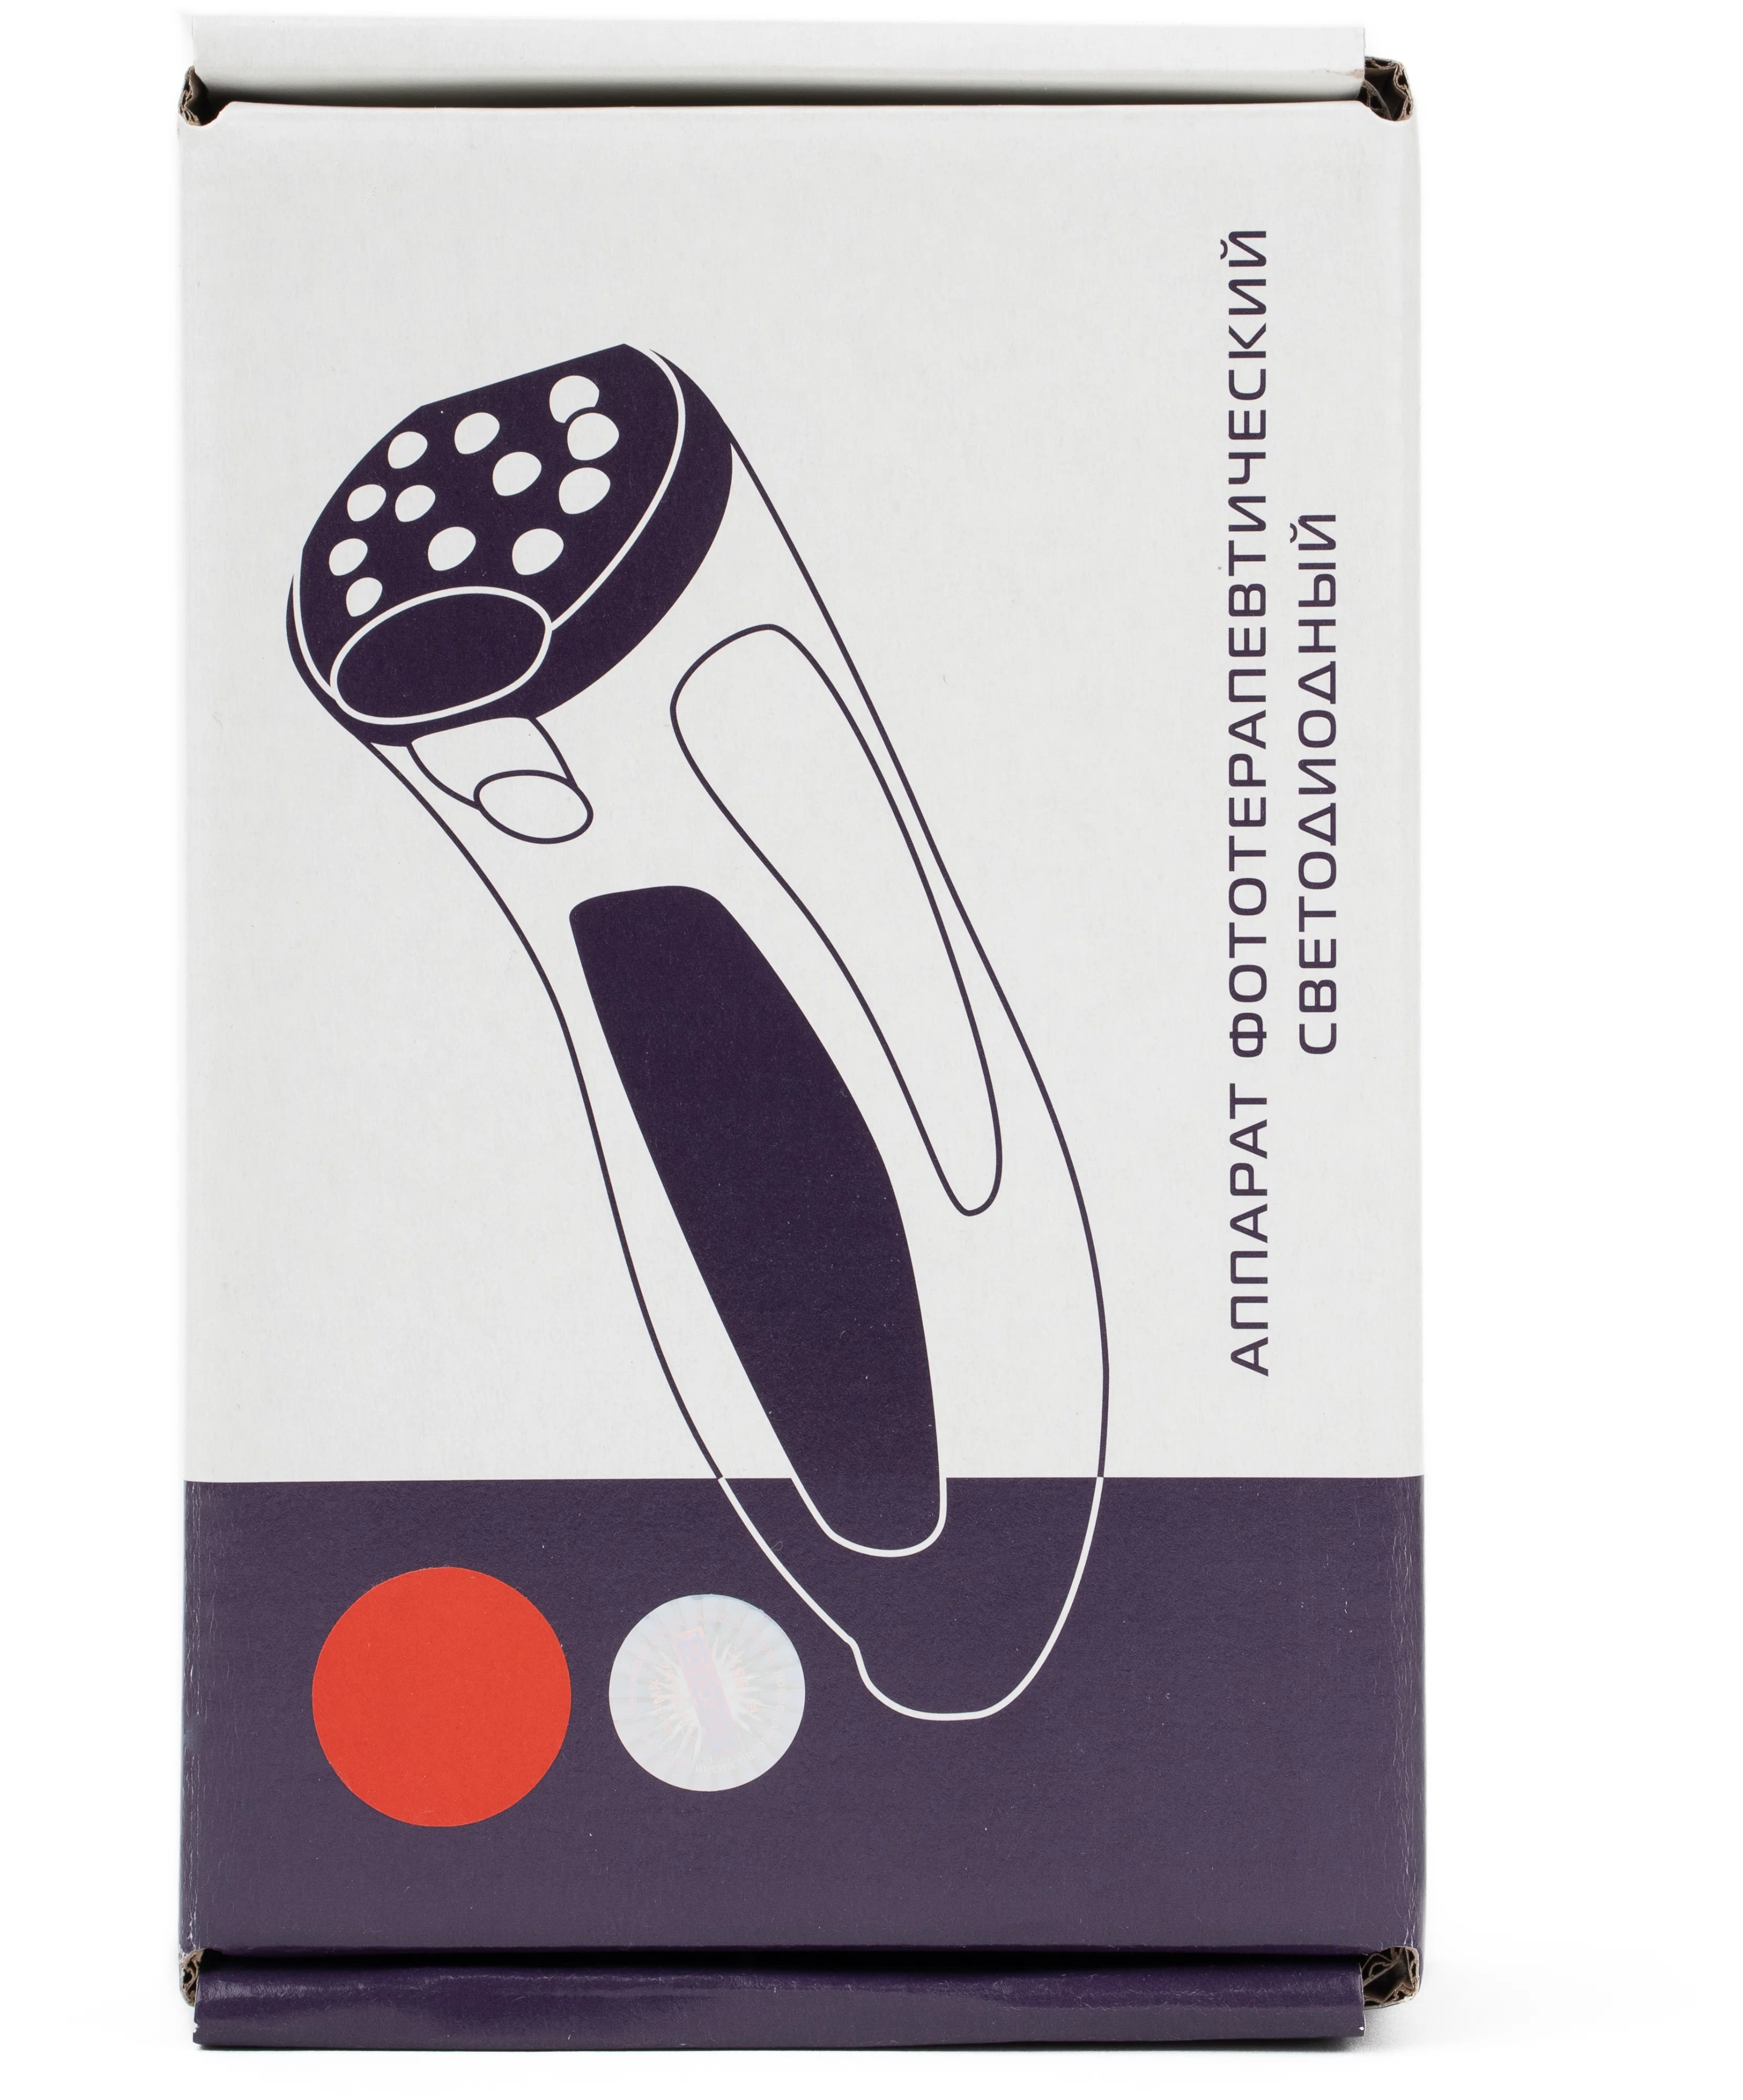 Физиотерапевтический прибор Невотон Красная лампа медицинская невотон для лечения суставов аппарат для фототерапии - фото 4